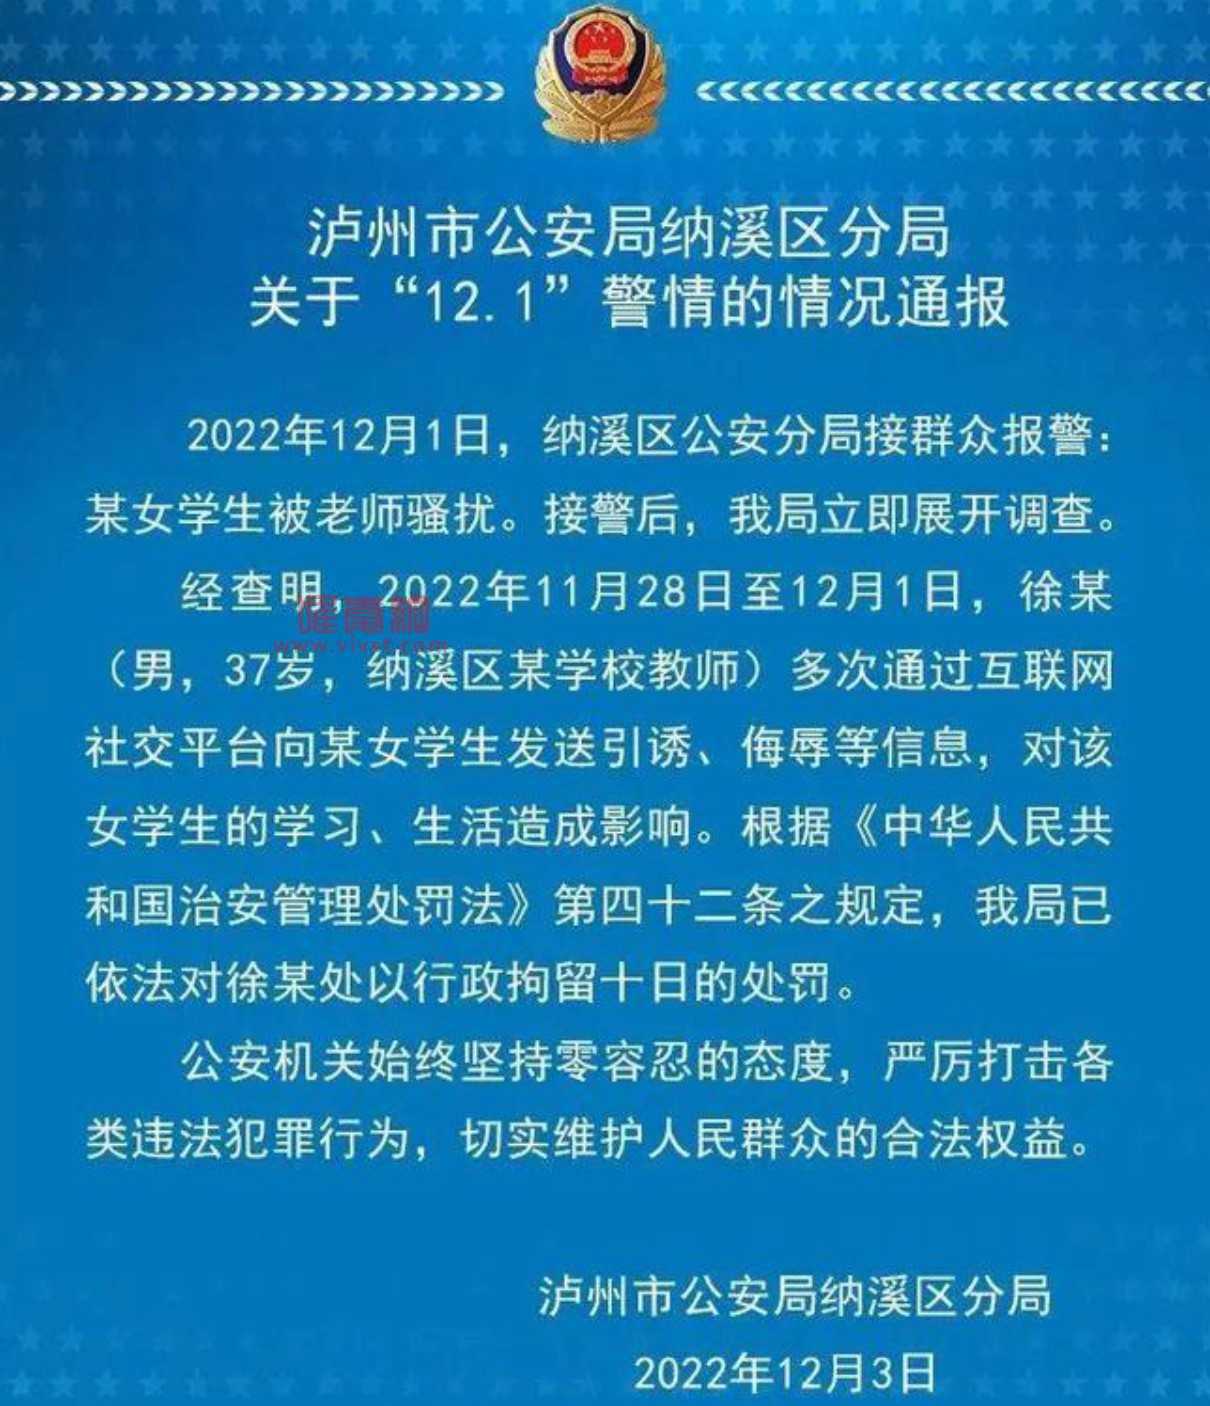 四川泸州初中体育男老师要用"一部苹果手机换女学生一夜"?官方通报来了!